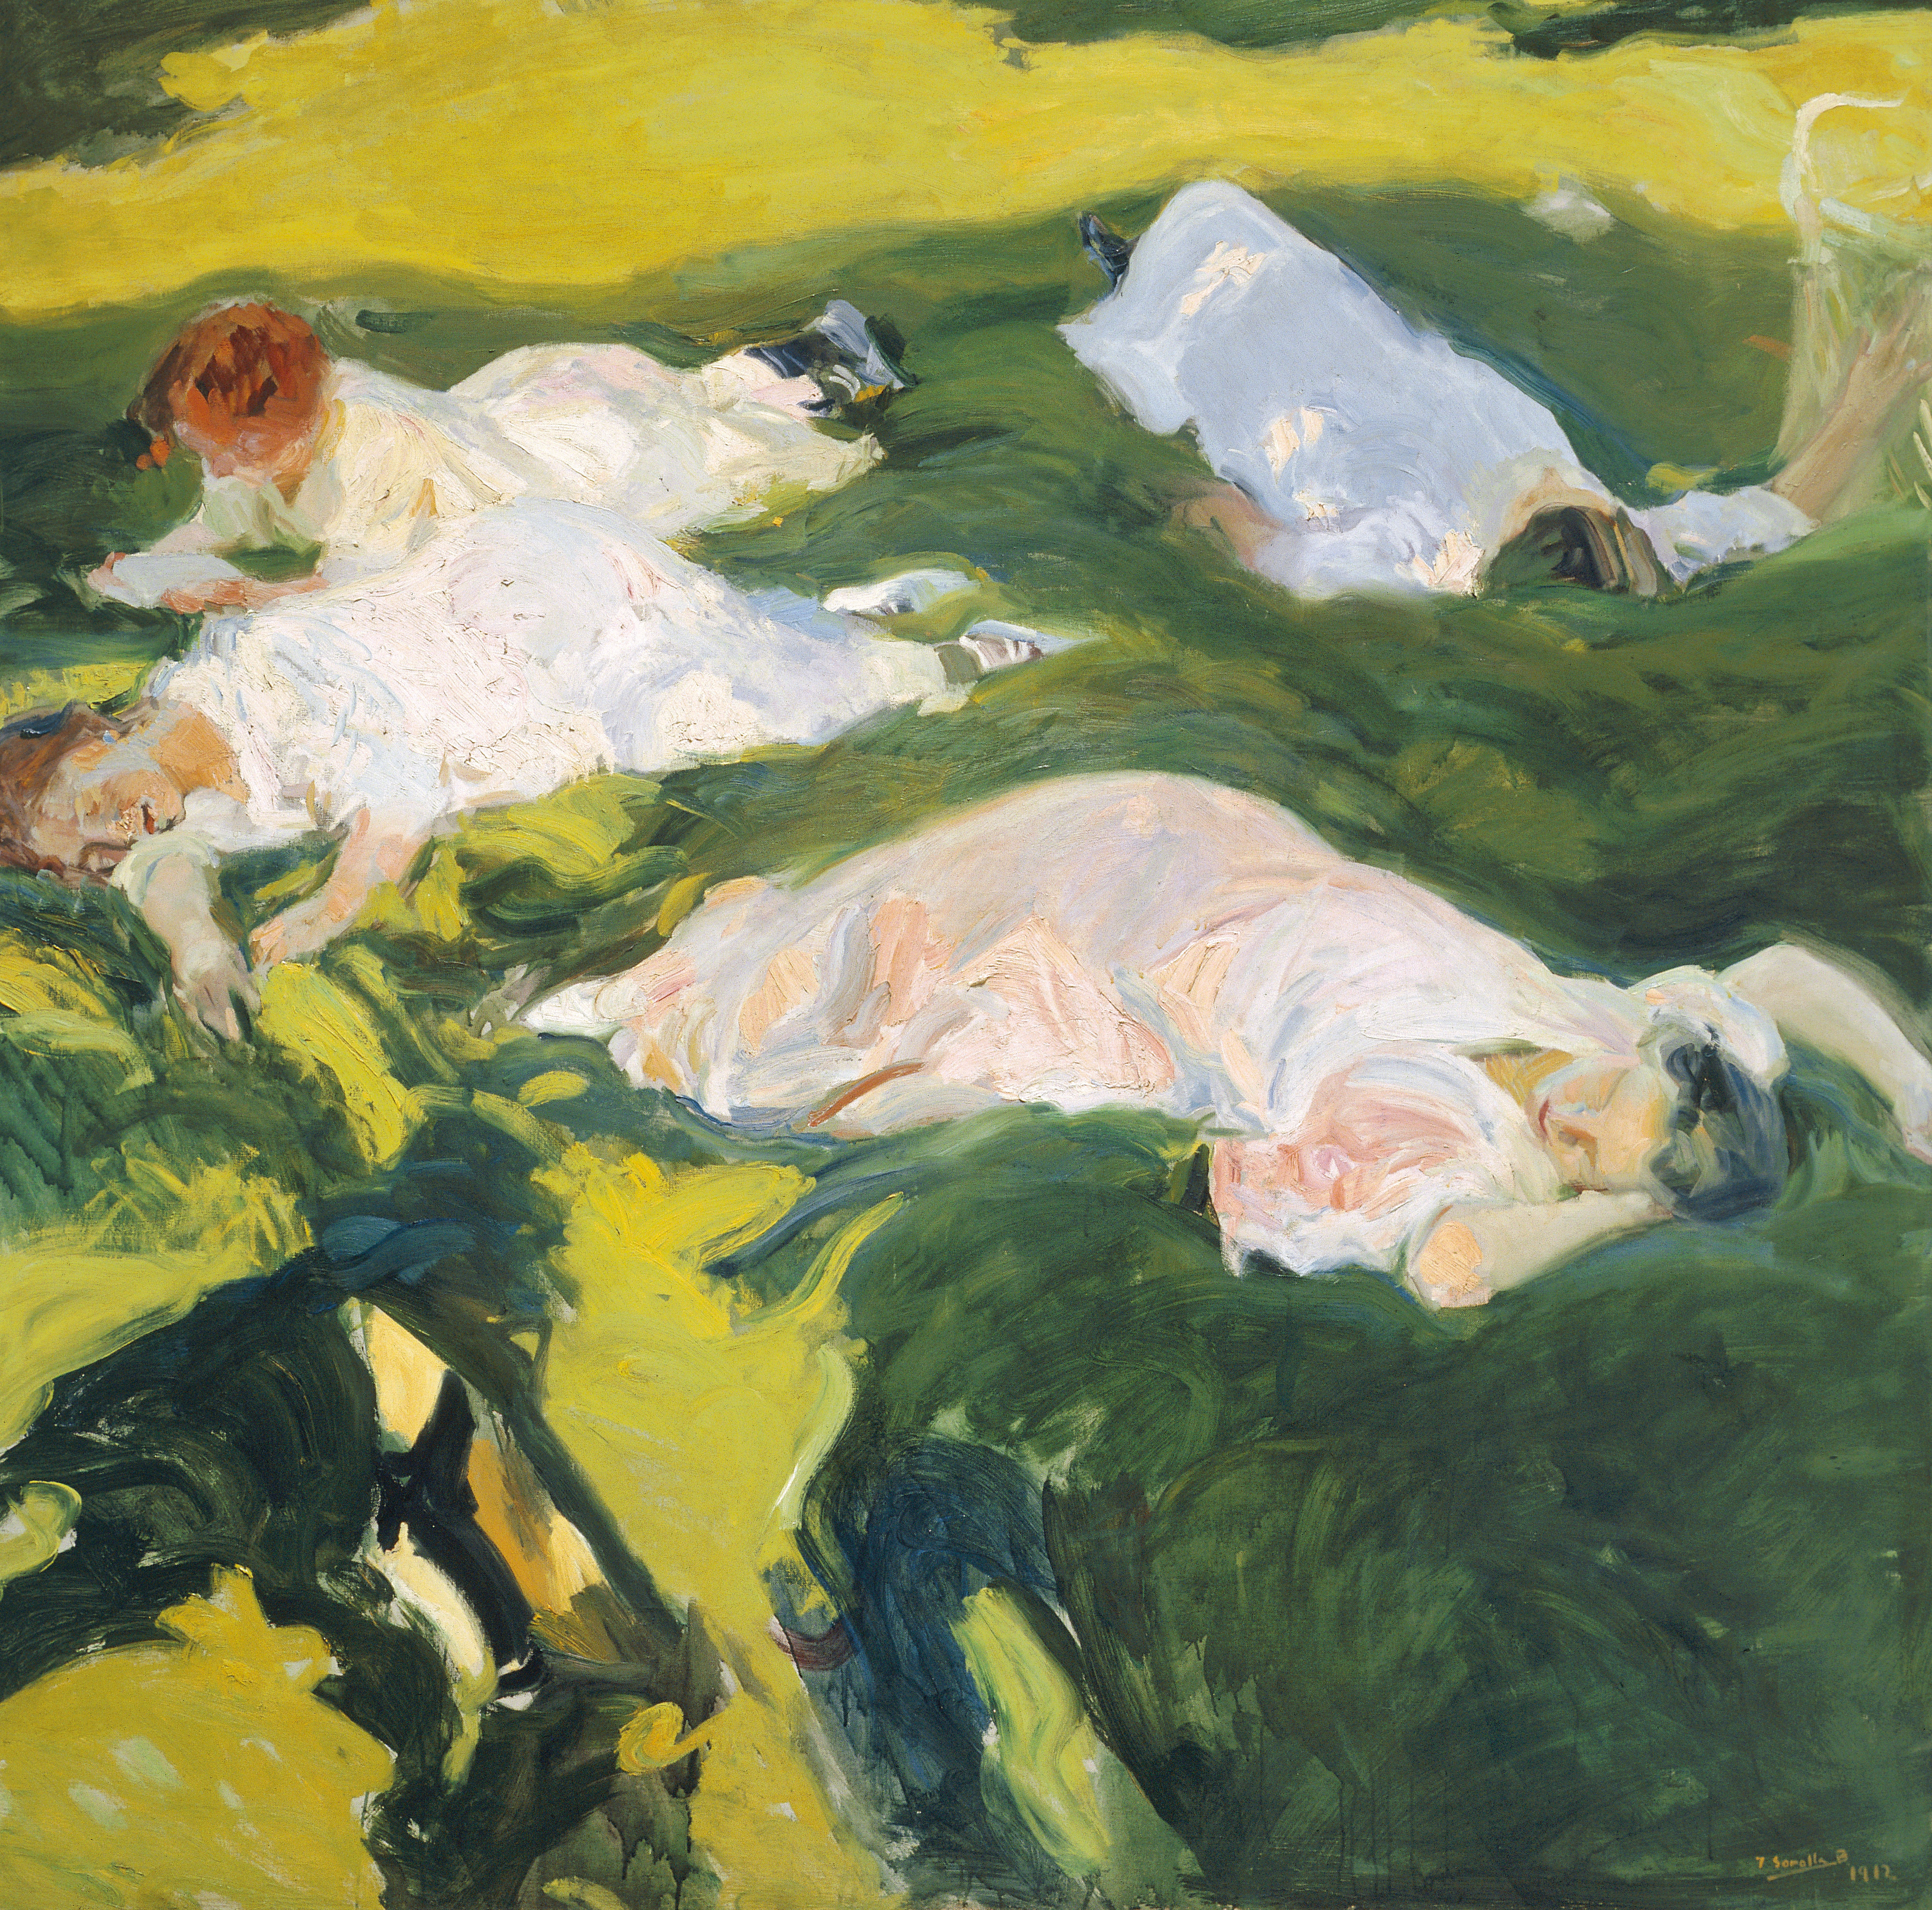 La sieste by Joaquín Sorolla - 1911 